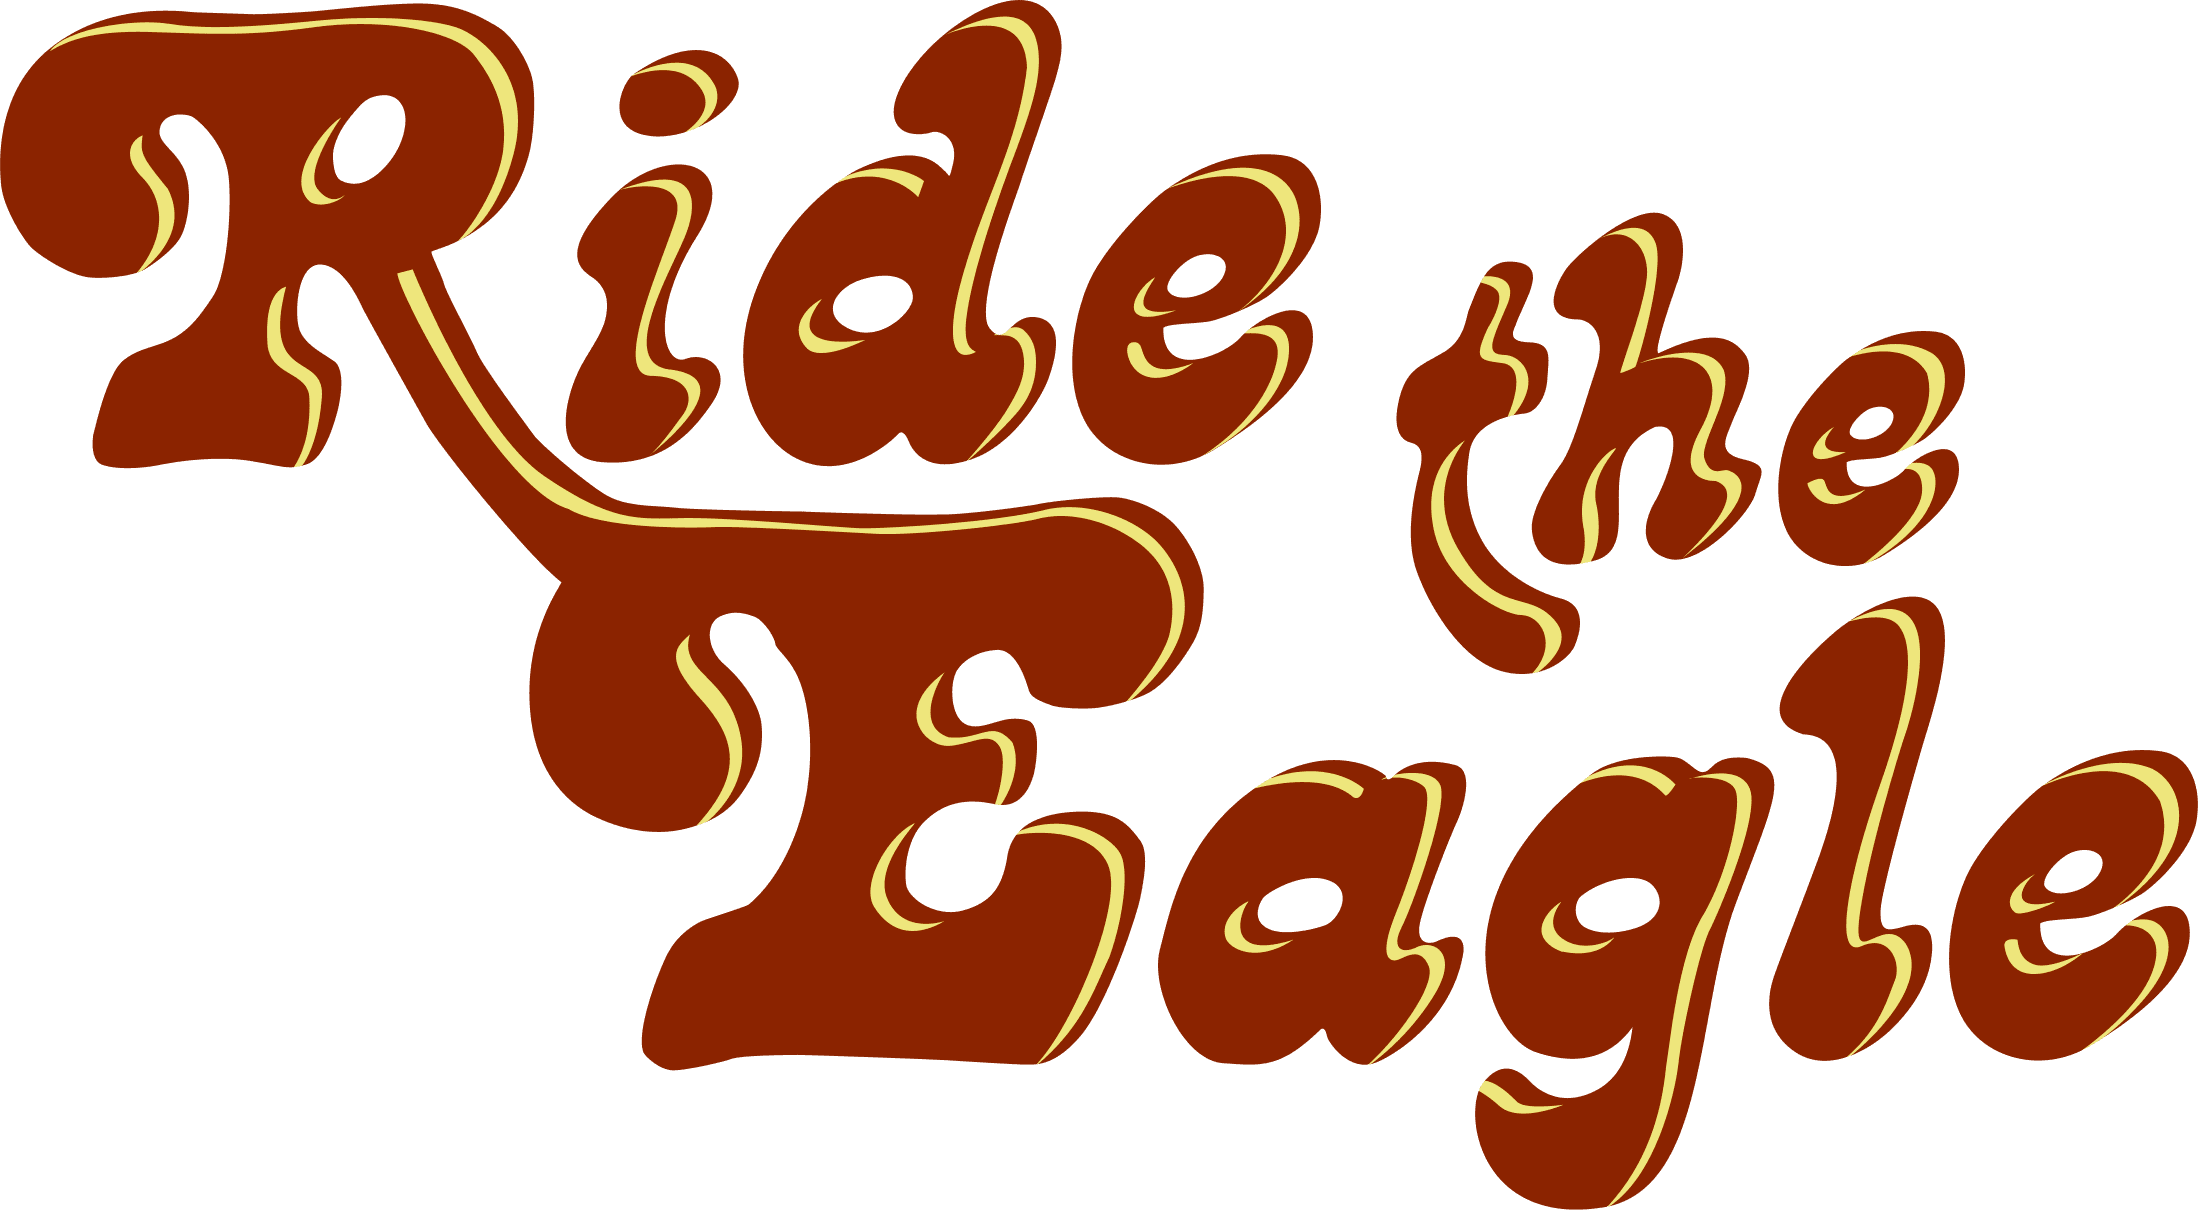 Ride the Eagle logo